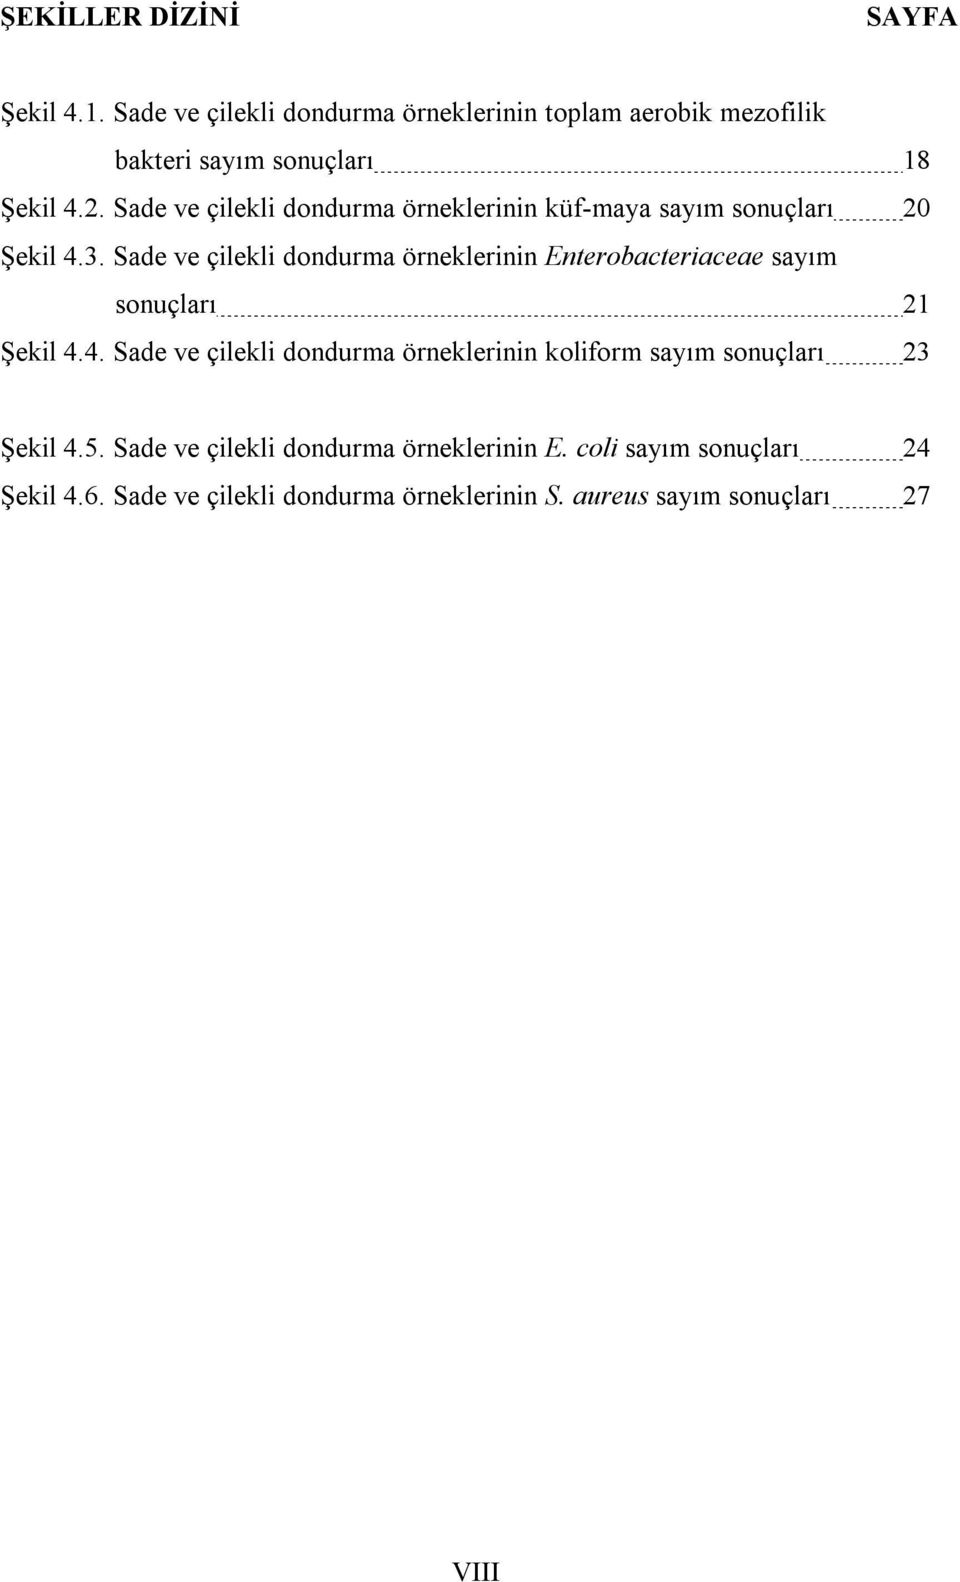 Sade ve çilekli dondurma örneklerinin Enterobacteriaceae sayım sonuçları 21 Şekil 4.